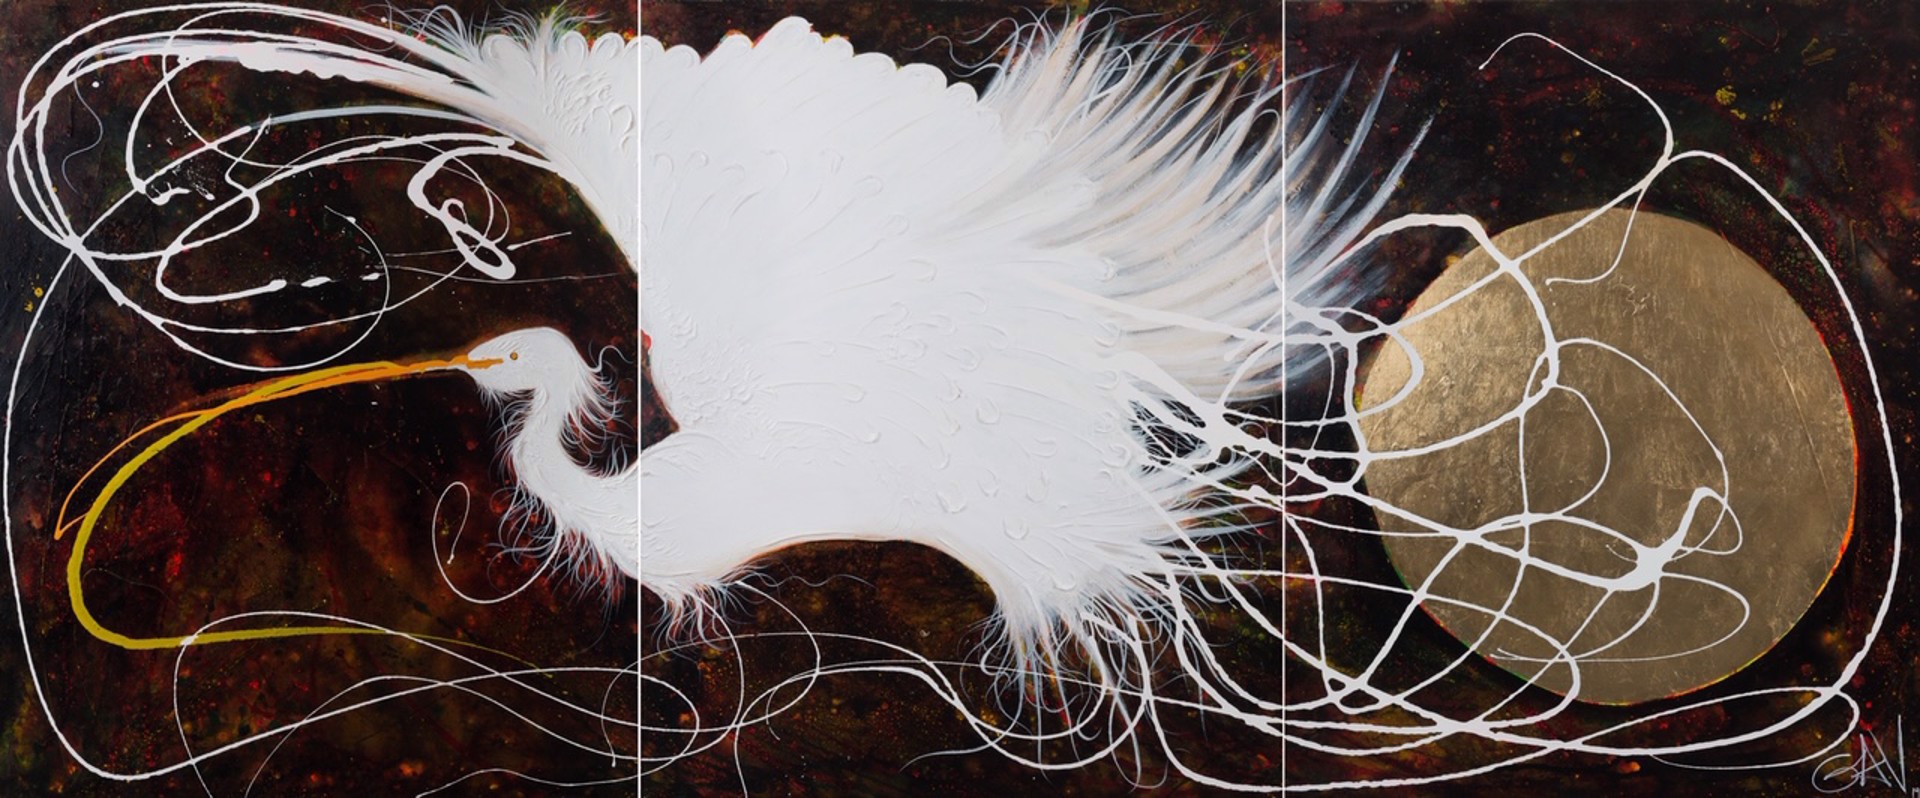 Egret (Triptych) by Gav Barbey